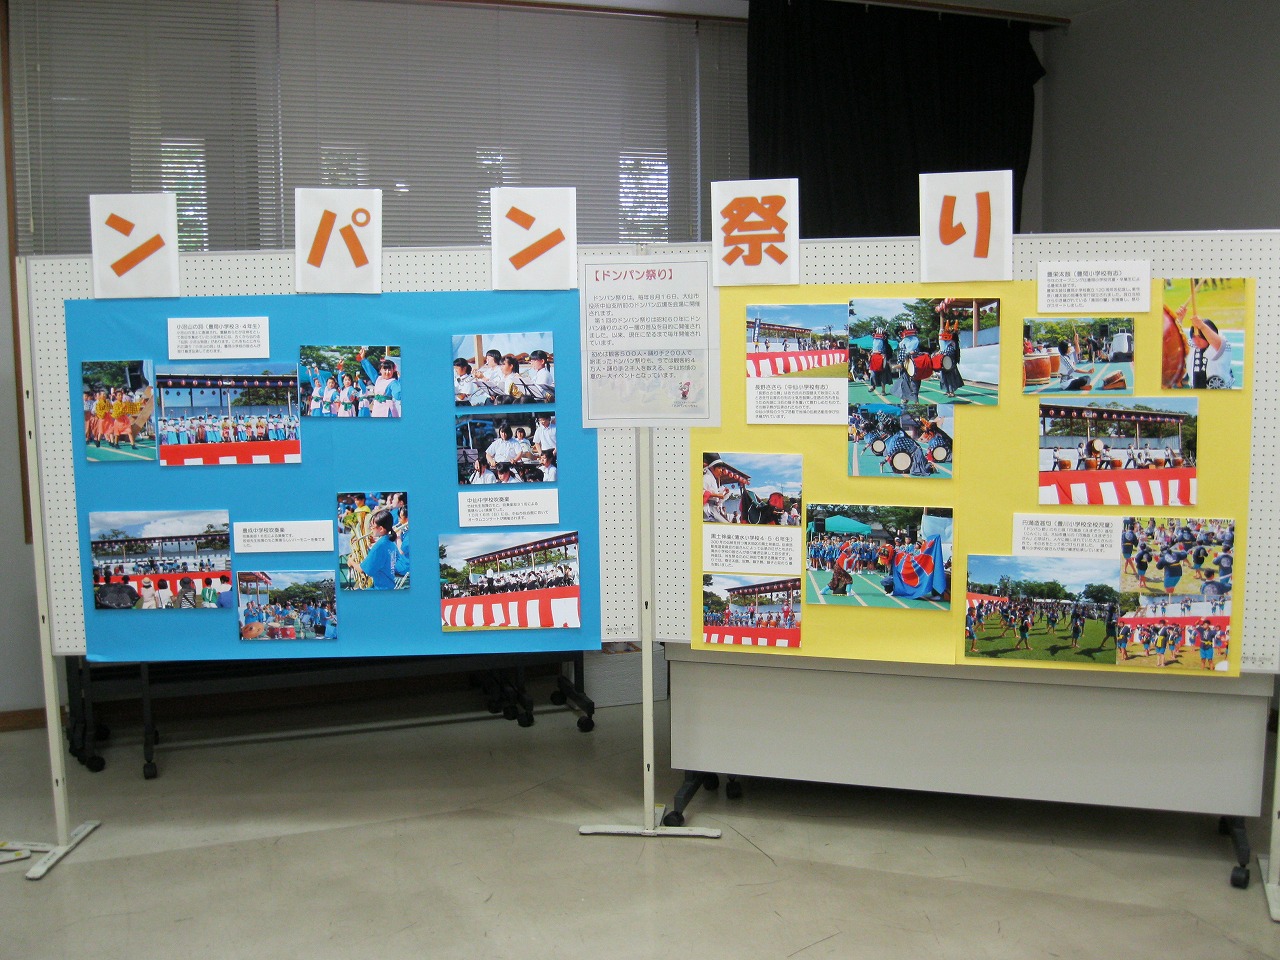 中仙中学校と豊成中学校の吹奏楽演奏や小学生による伝統芸能の写真展示です。